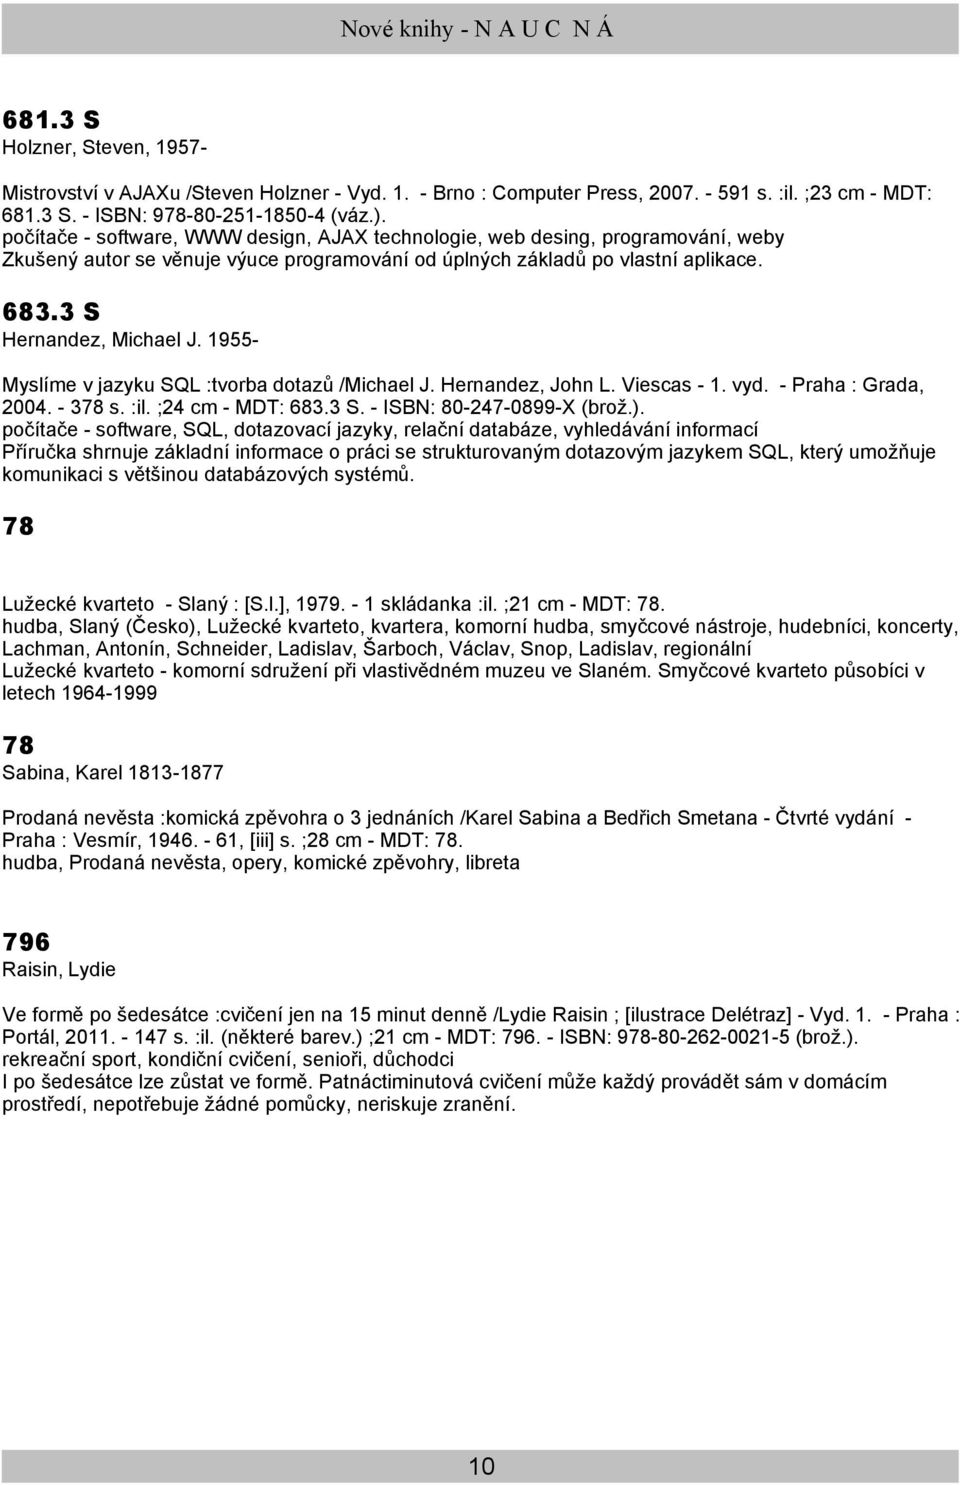 1955- Myslíme v jazyku SQL :tvorba dotazů /Michael J. Hernandez, John L. Viescas - 1. vyd. - Praha : Grada, 2004. - 378 s. :il. ;24 cm - MDT: 683.3 S. - ISBN: 80-247-0899-X (brož.).